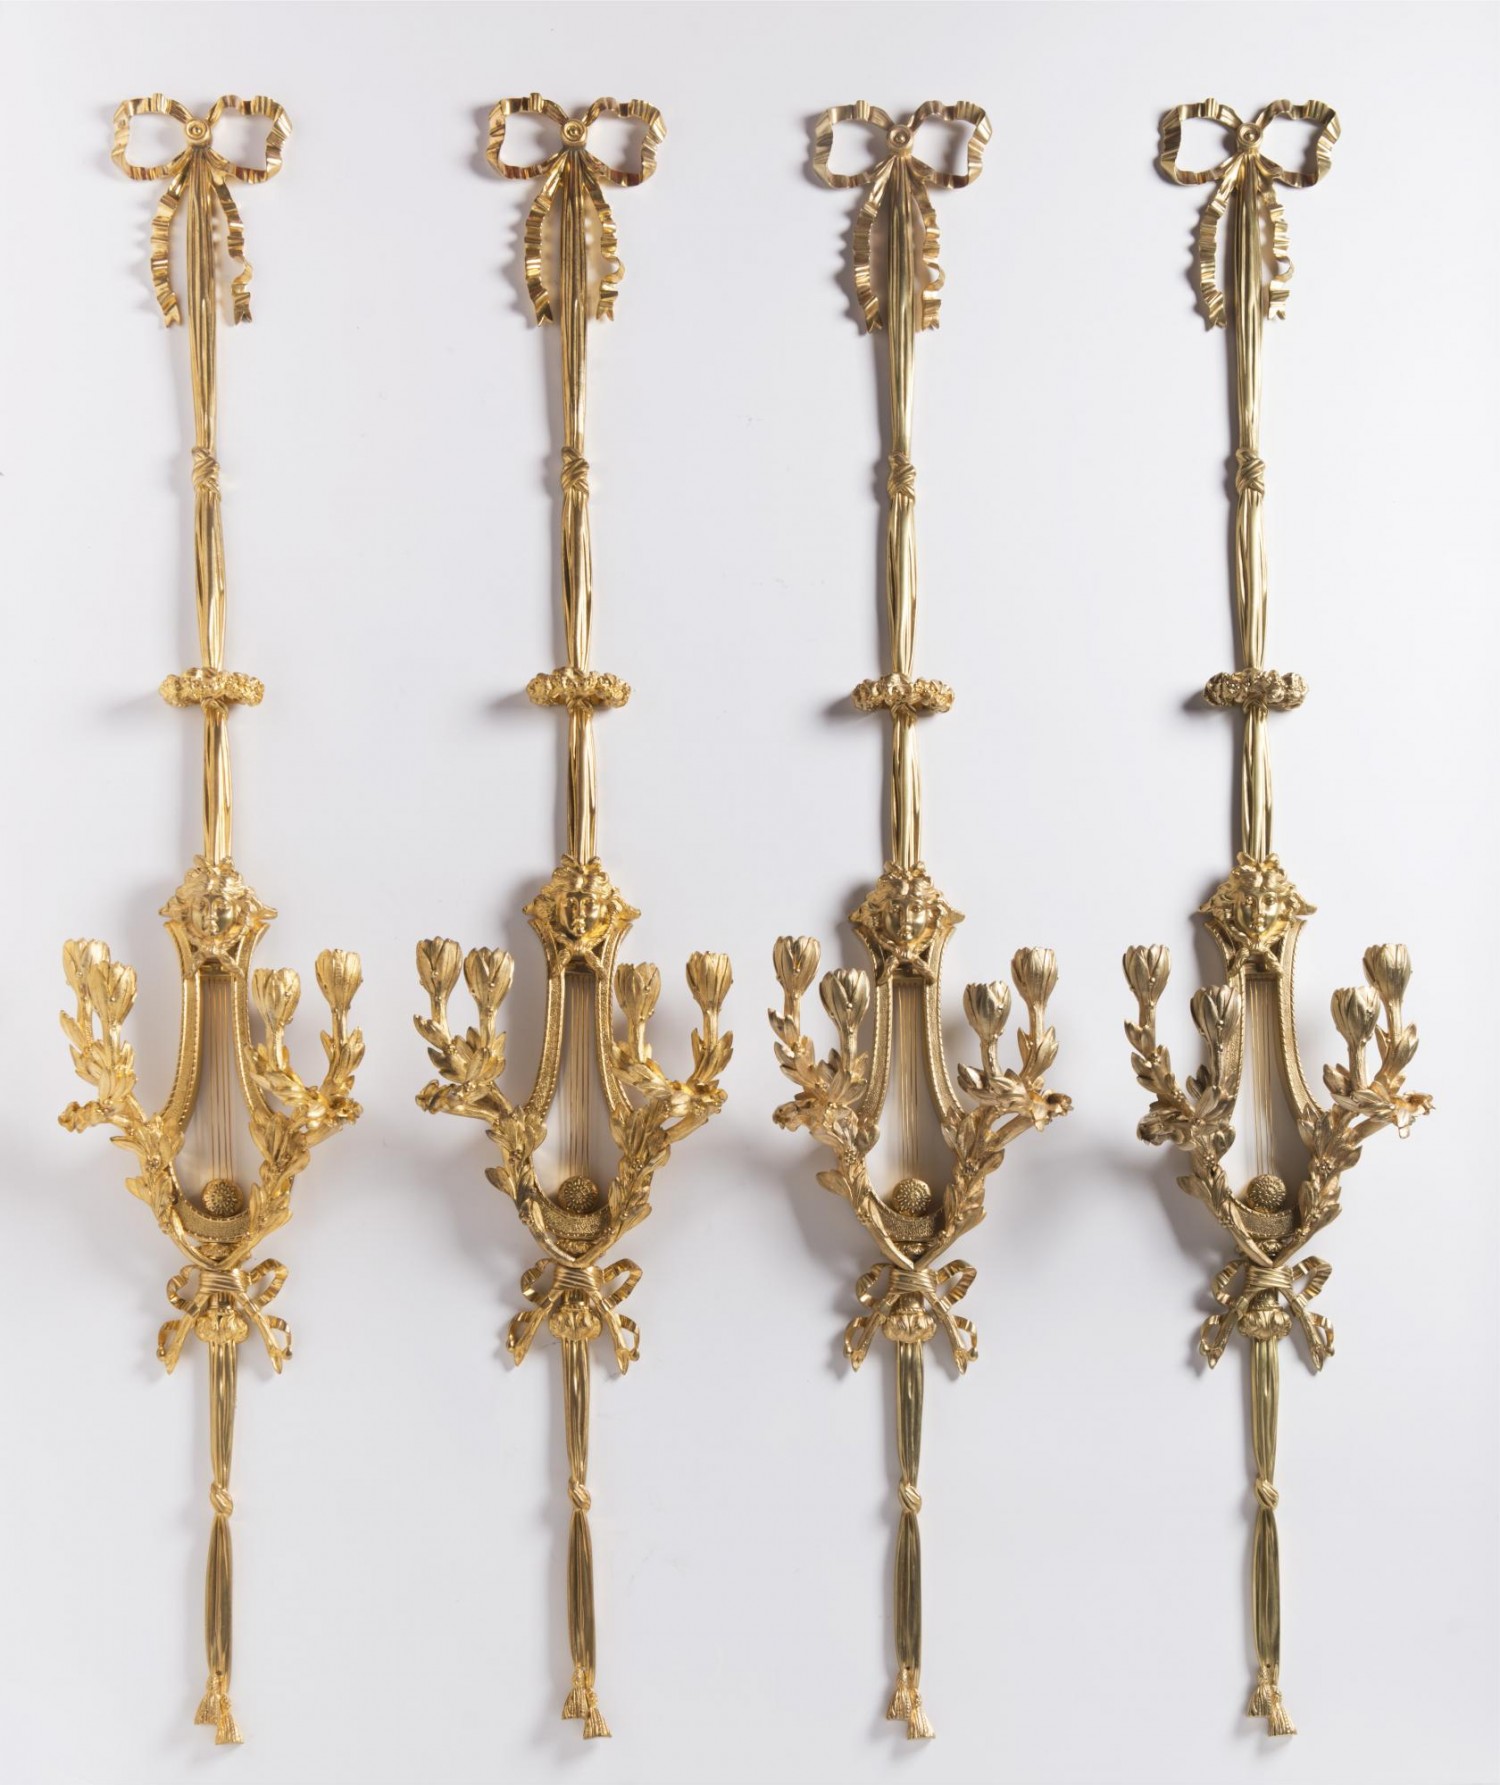 10/ Čtyři apliky s lyrou, Francie, kolem 1820 zlacený bronz, výška 147 cm cena: 434 000 Kč, Arthouse Hejtmánek 6. 12. 2018